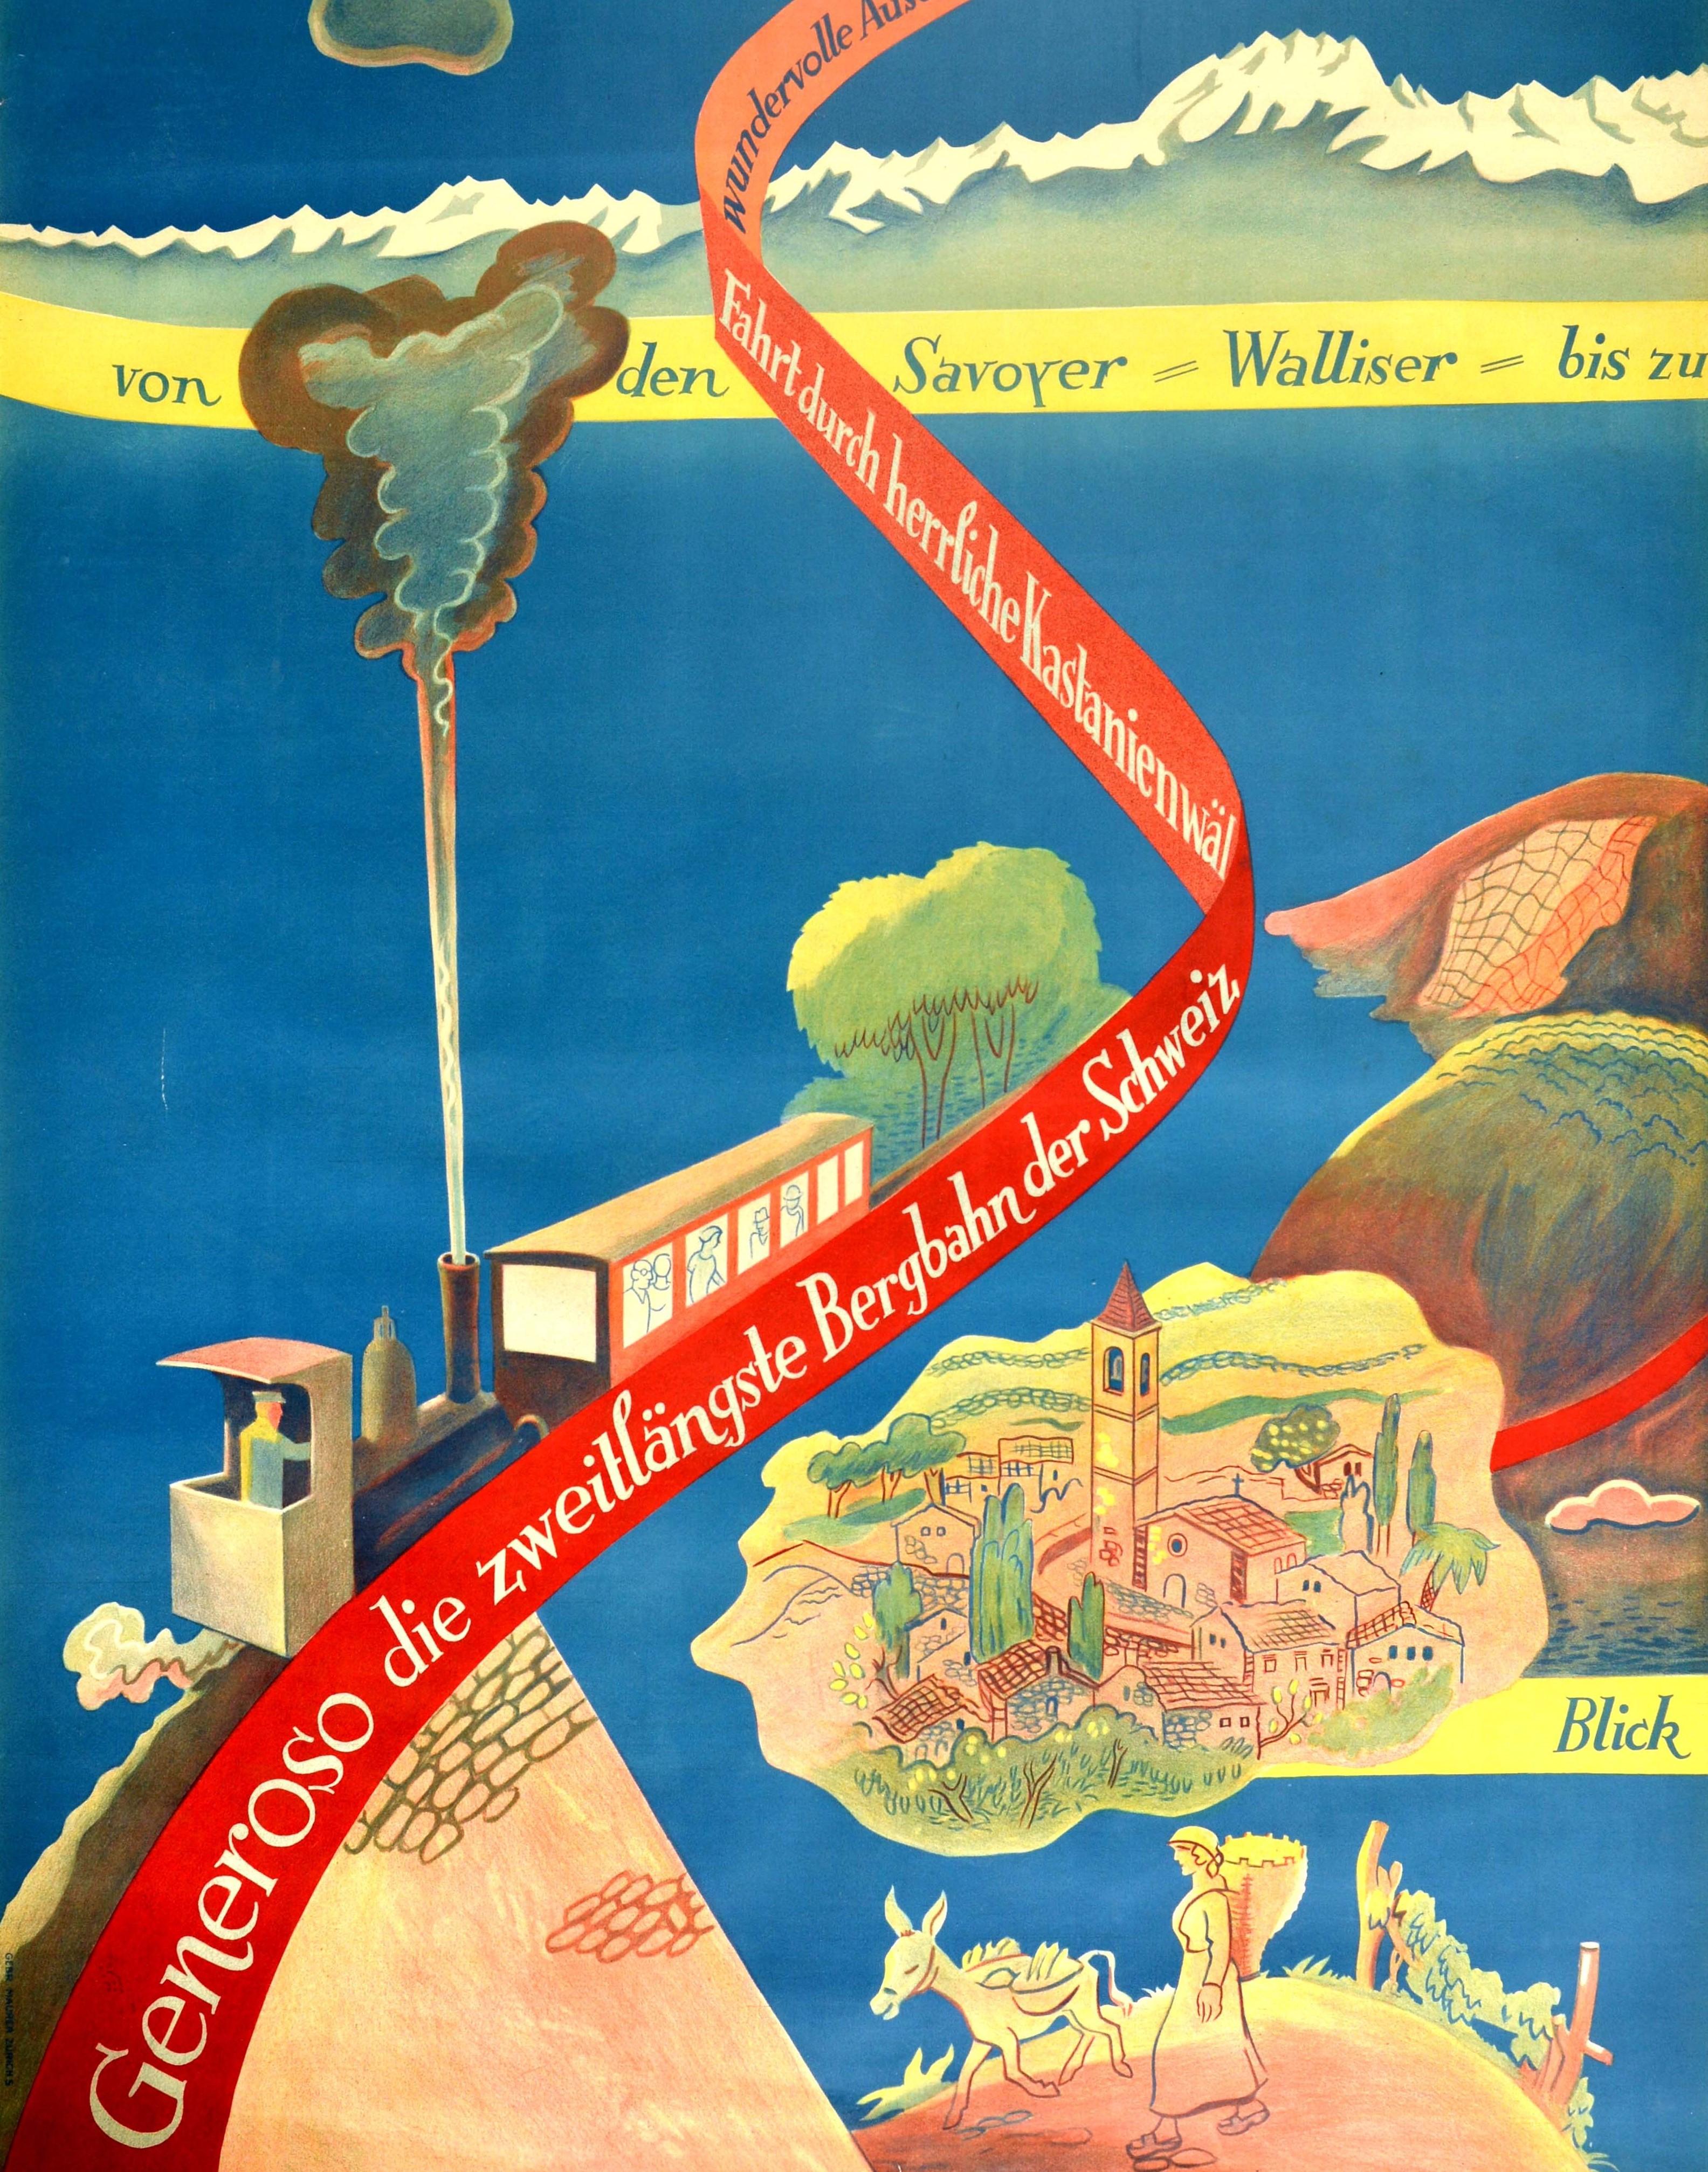 Original vintage railway travel poster for the Monte Generoso railway (opened 1890) - Generoso die zweitlangste Bergbahn der Schweiz fahrt durch herrliche Kastanienwahl wunderwolle ausblicke auf Seen und Gebirge von den Savoyer Walliser bis zu Blick